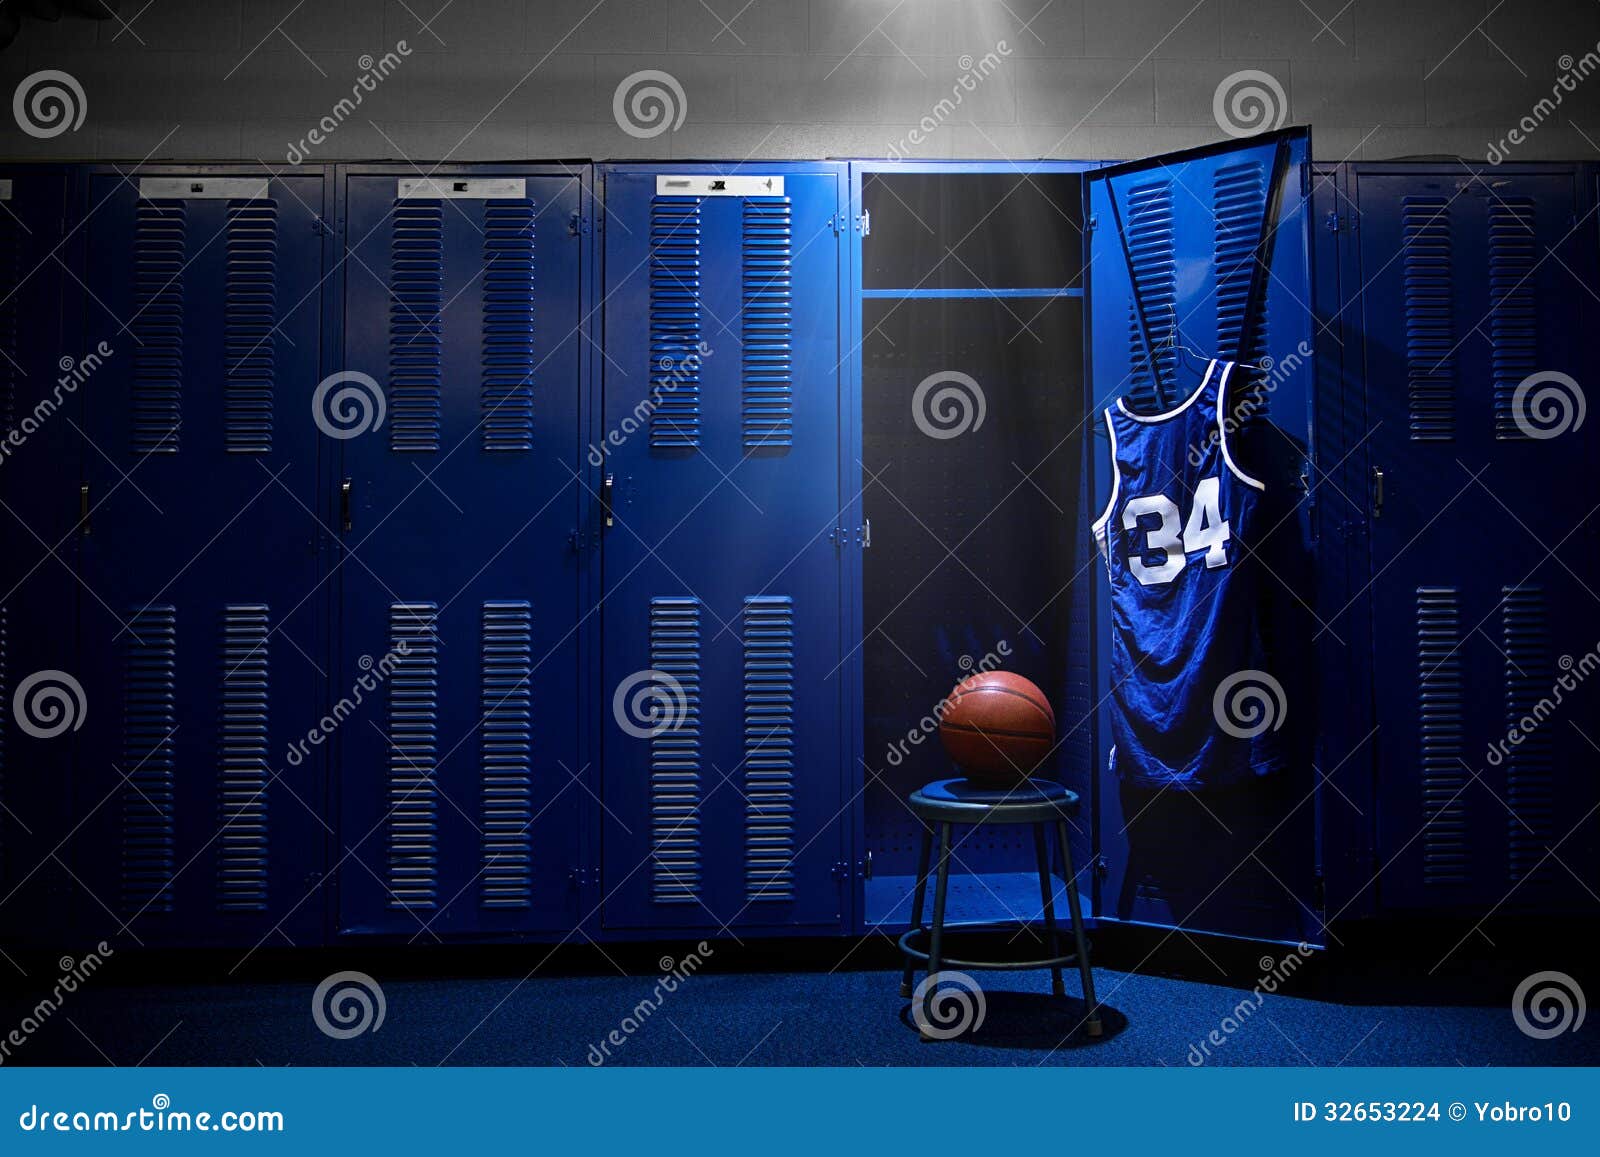 basketball locker room